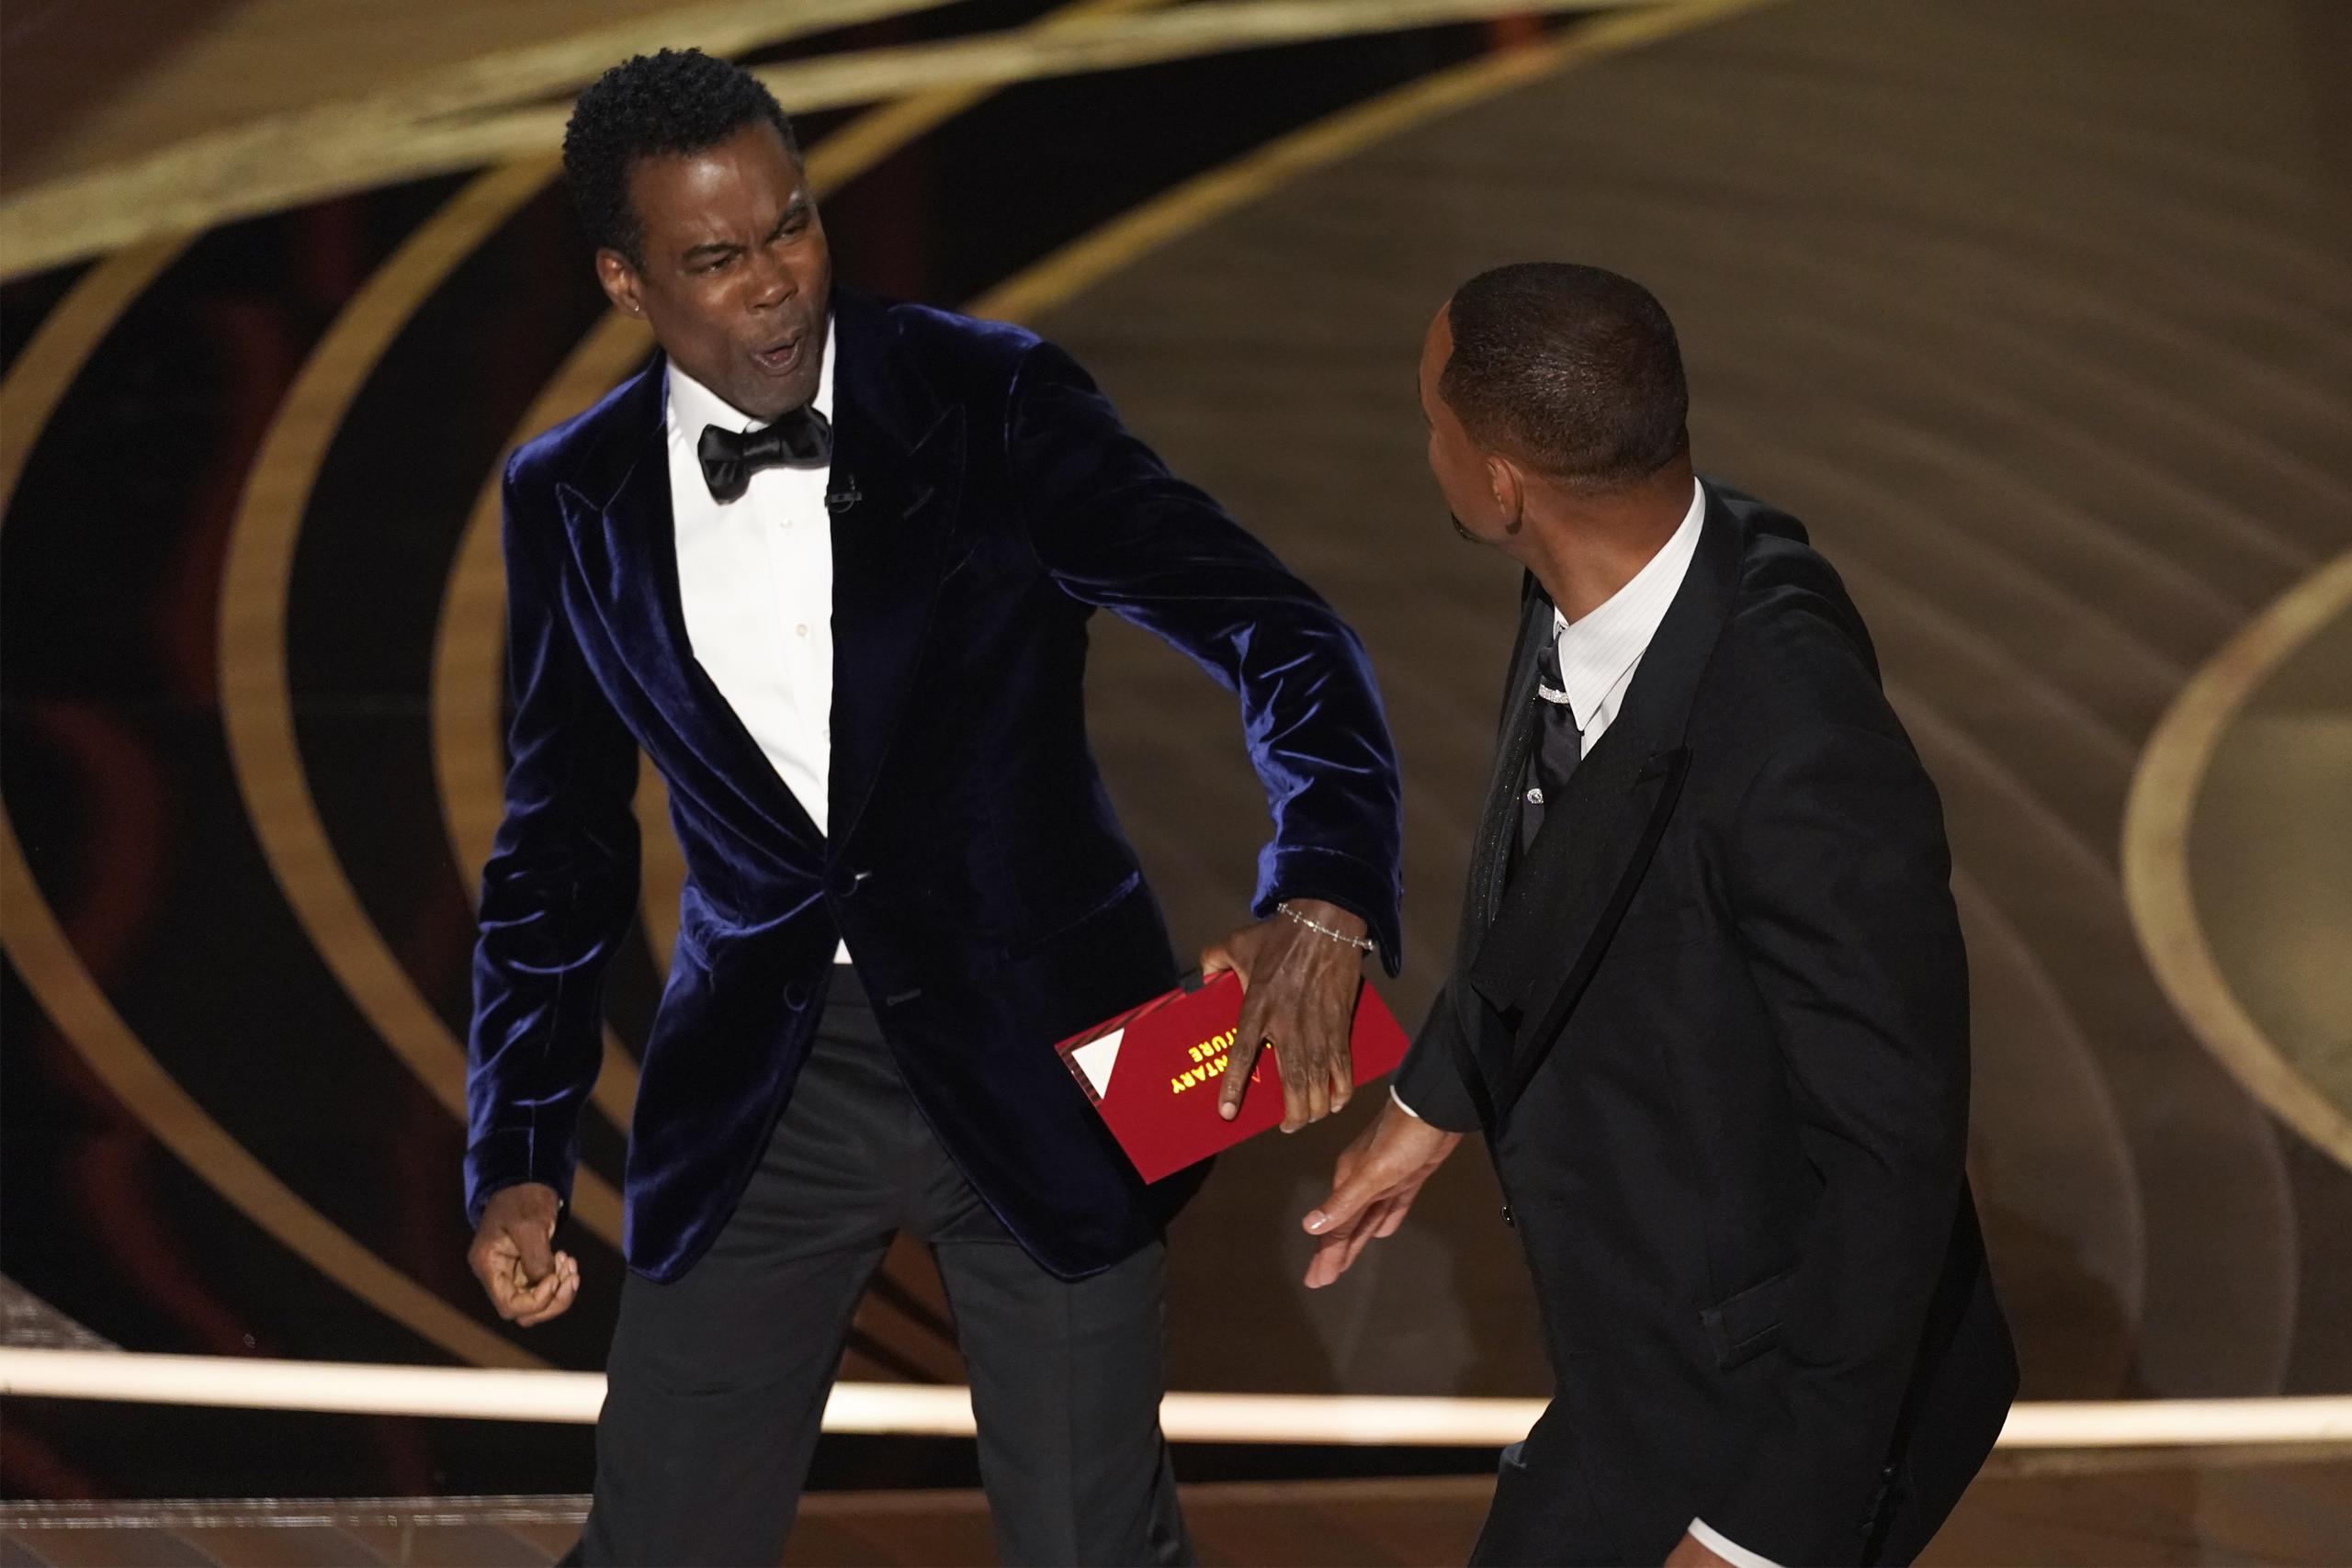 El momento que Chris Rock reacciona a la bofetada de Will Smith en pleno escenario durante la entrega de los premios Oscar el 27 de marzo de 2022 en el Teatro Dolby, en Los Ángeles.